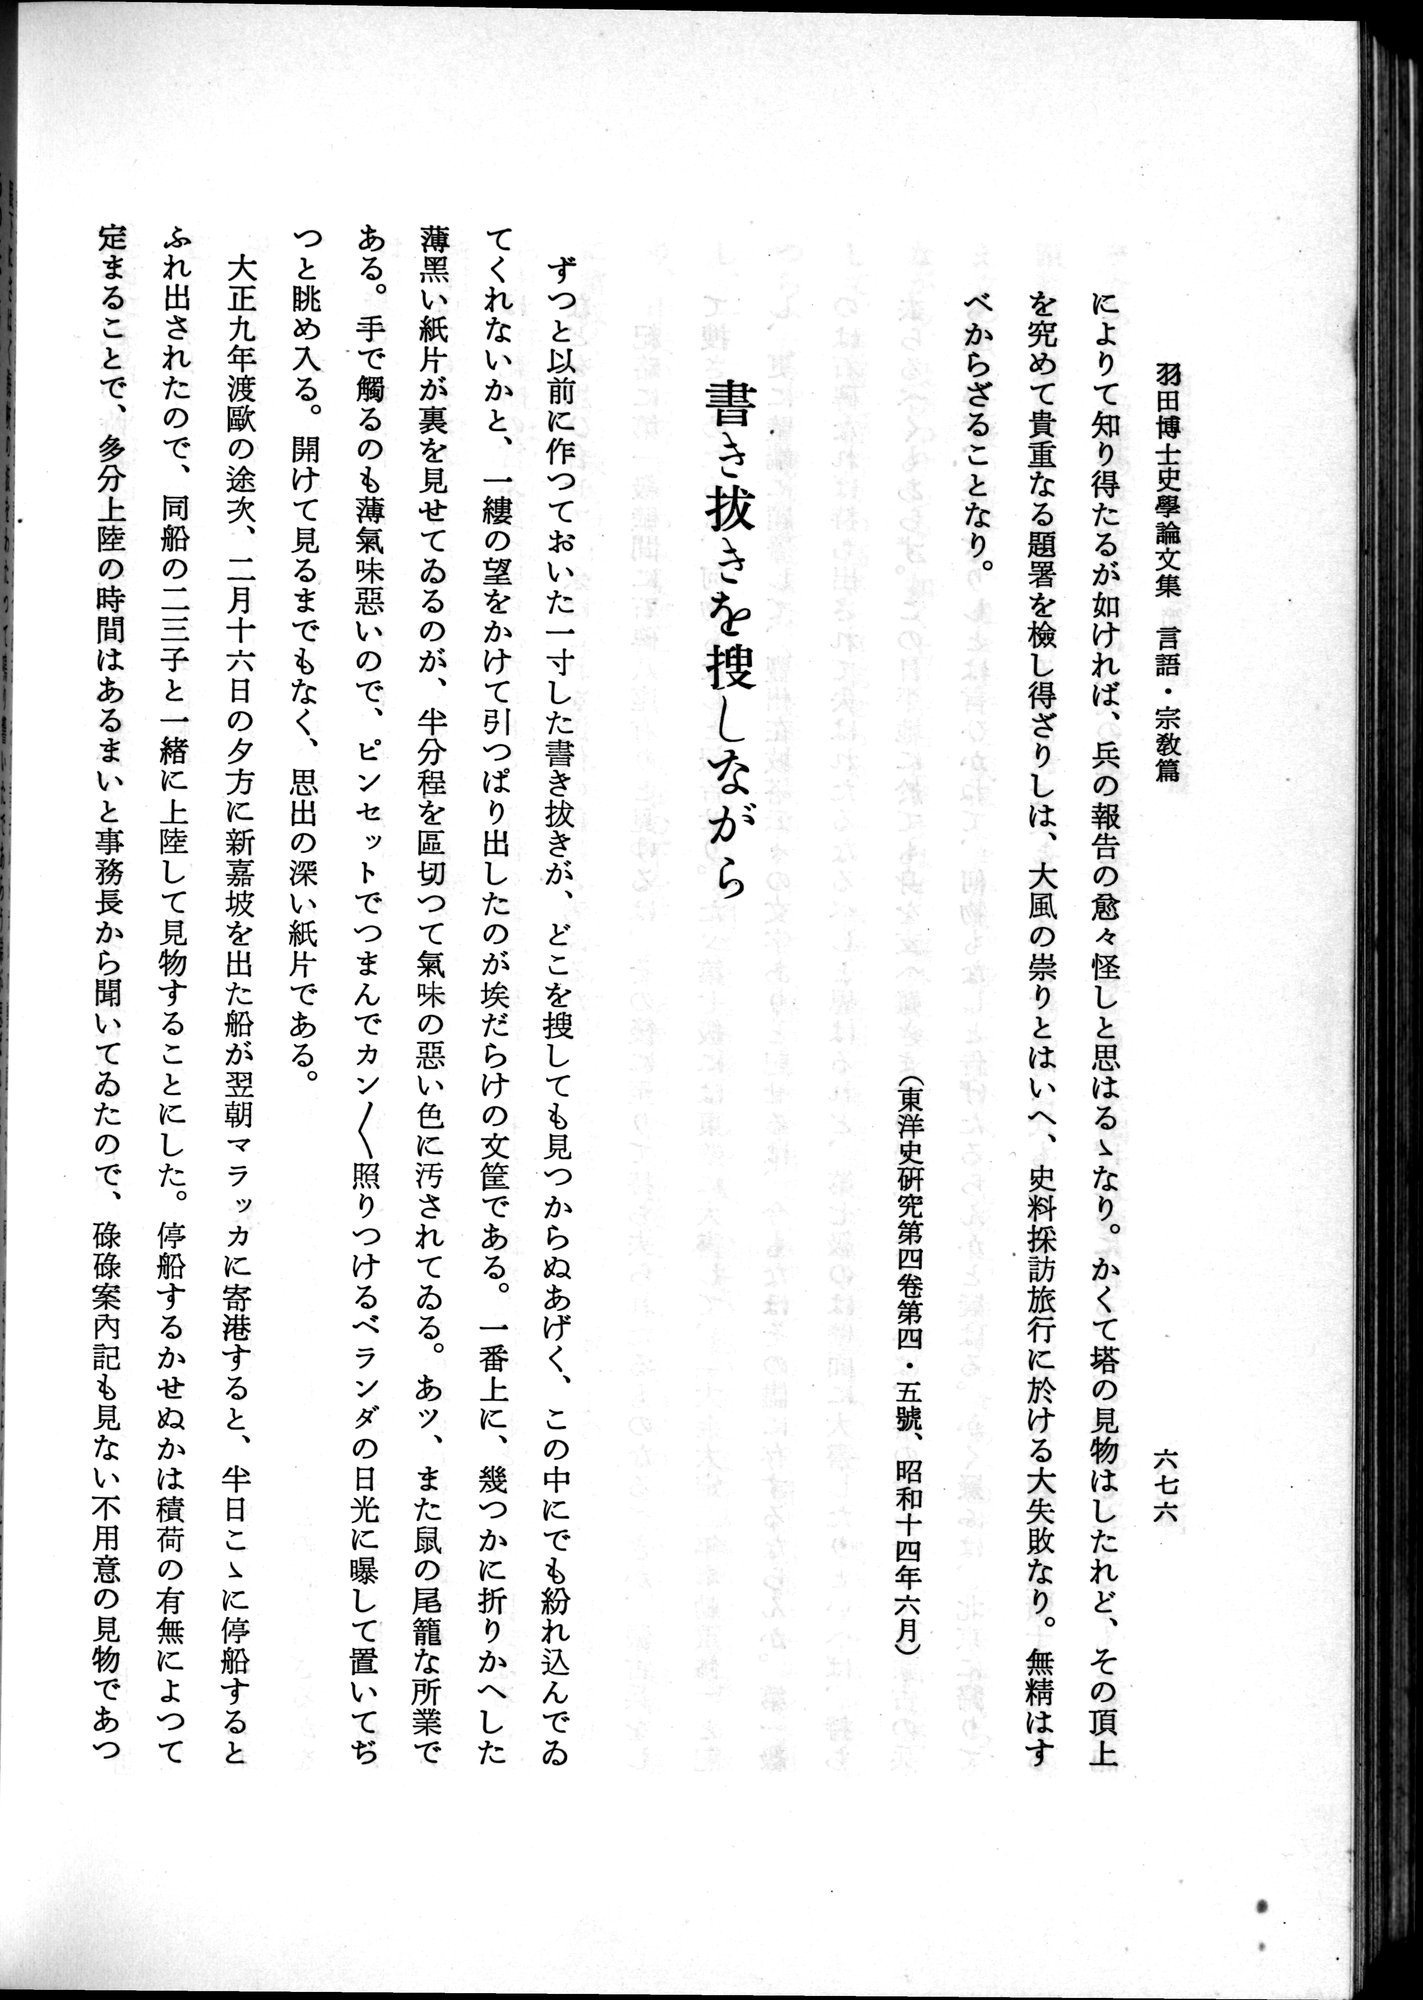 羽田博士史学論文集 : vol.2 / 740 ページ（白黒高解像度画像）